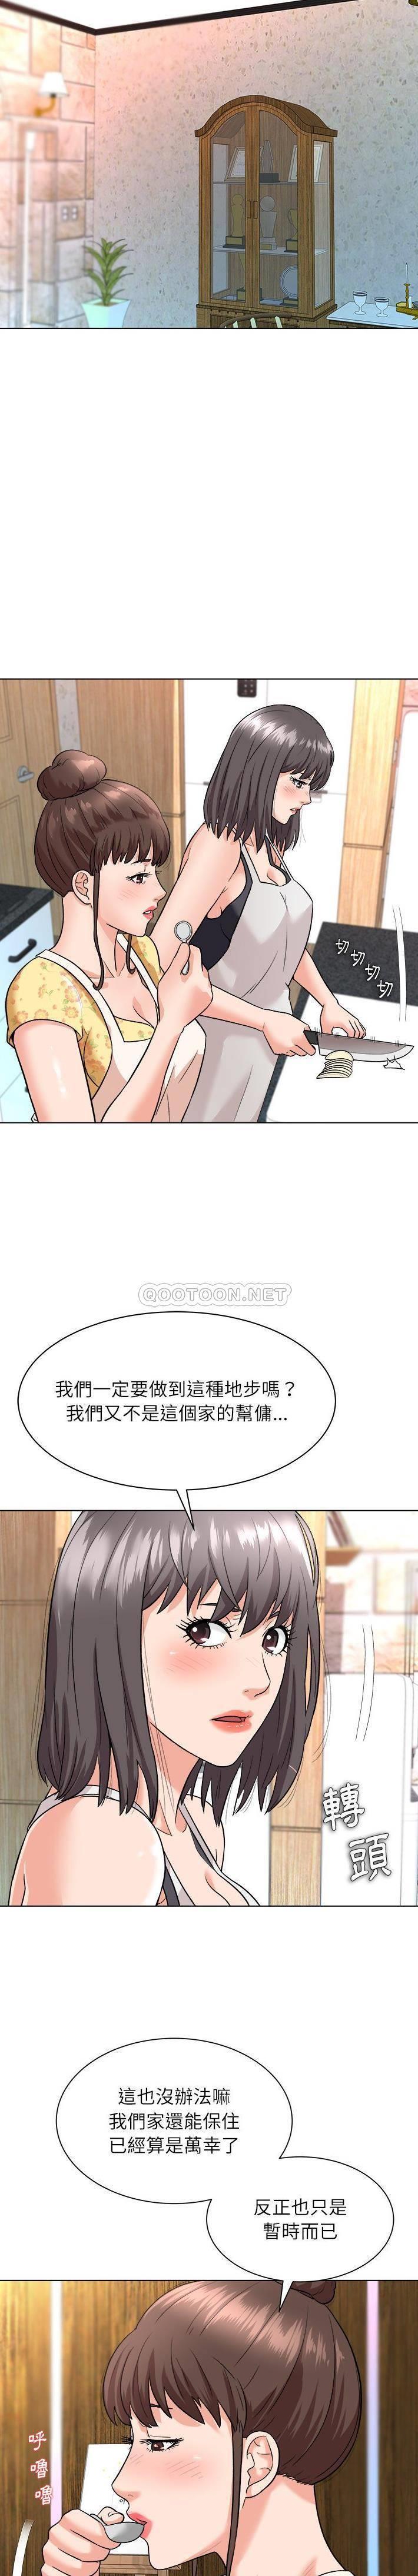 韩国污漫画 豪賭陷阱 第7话 3